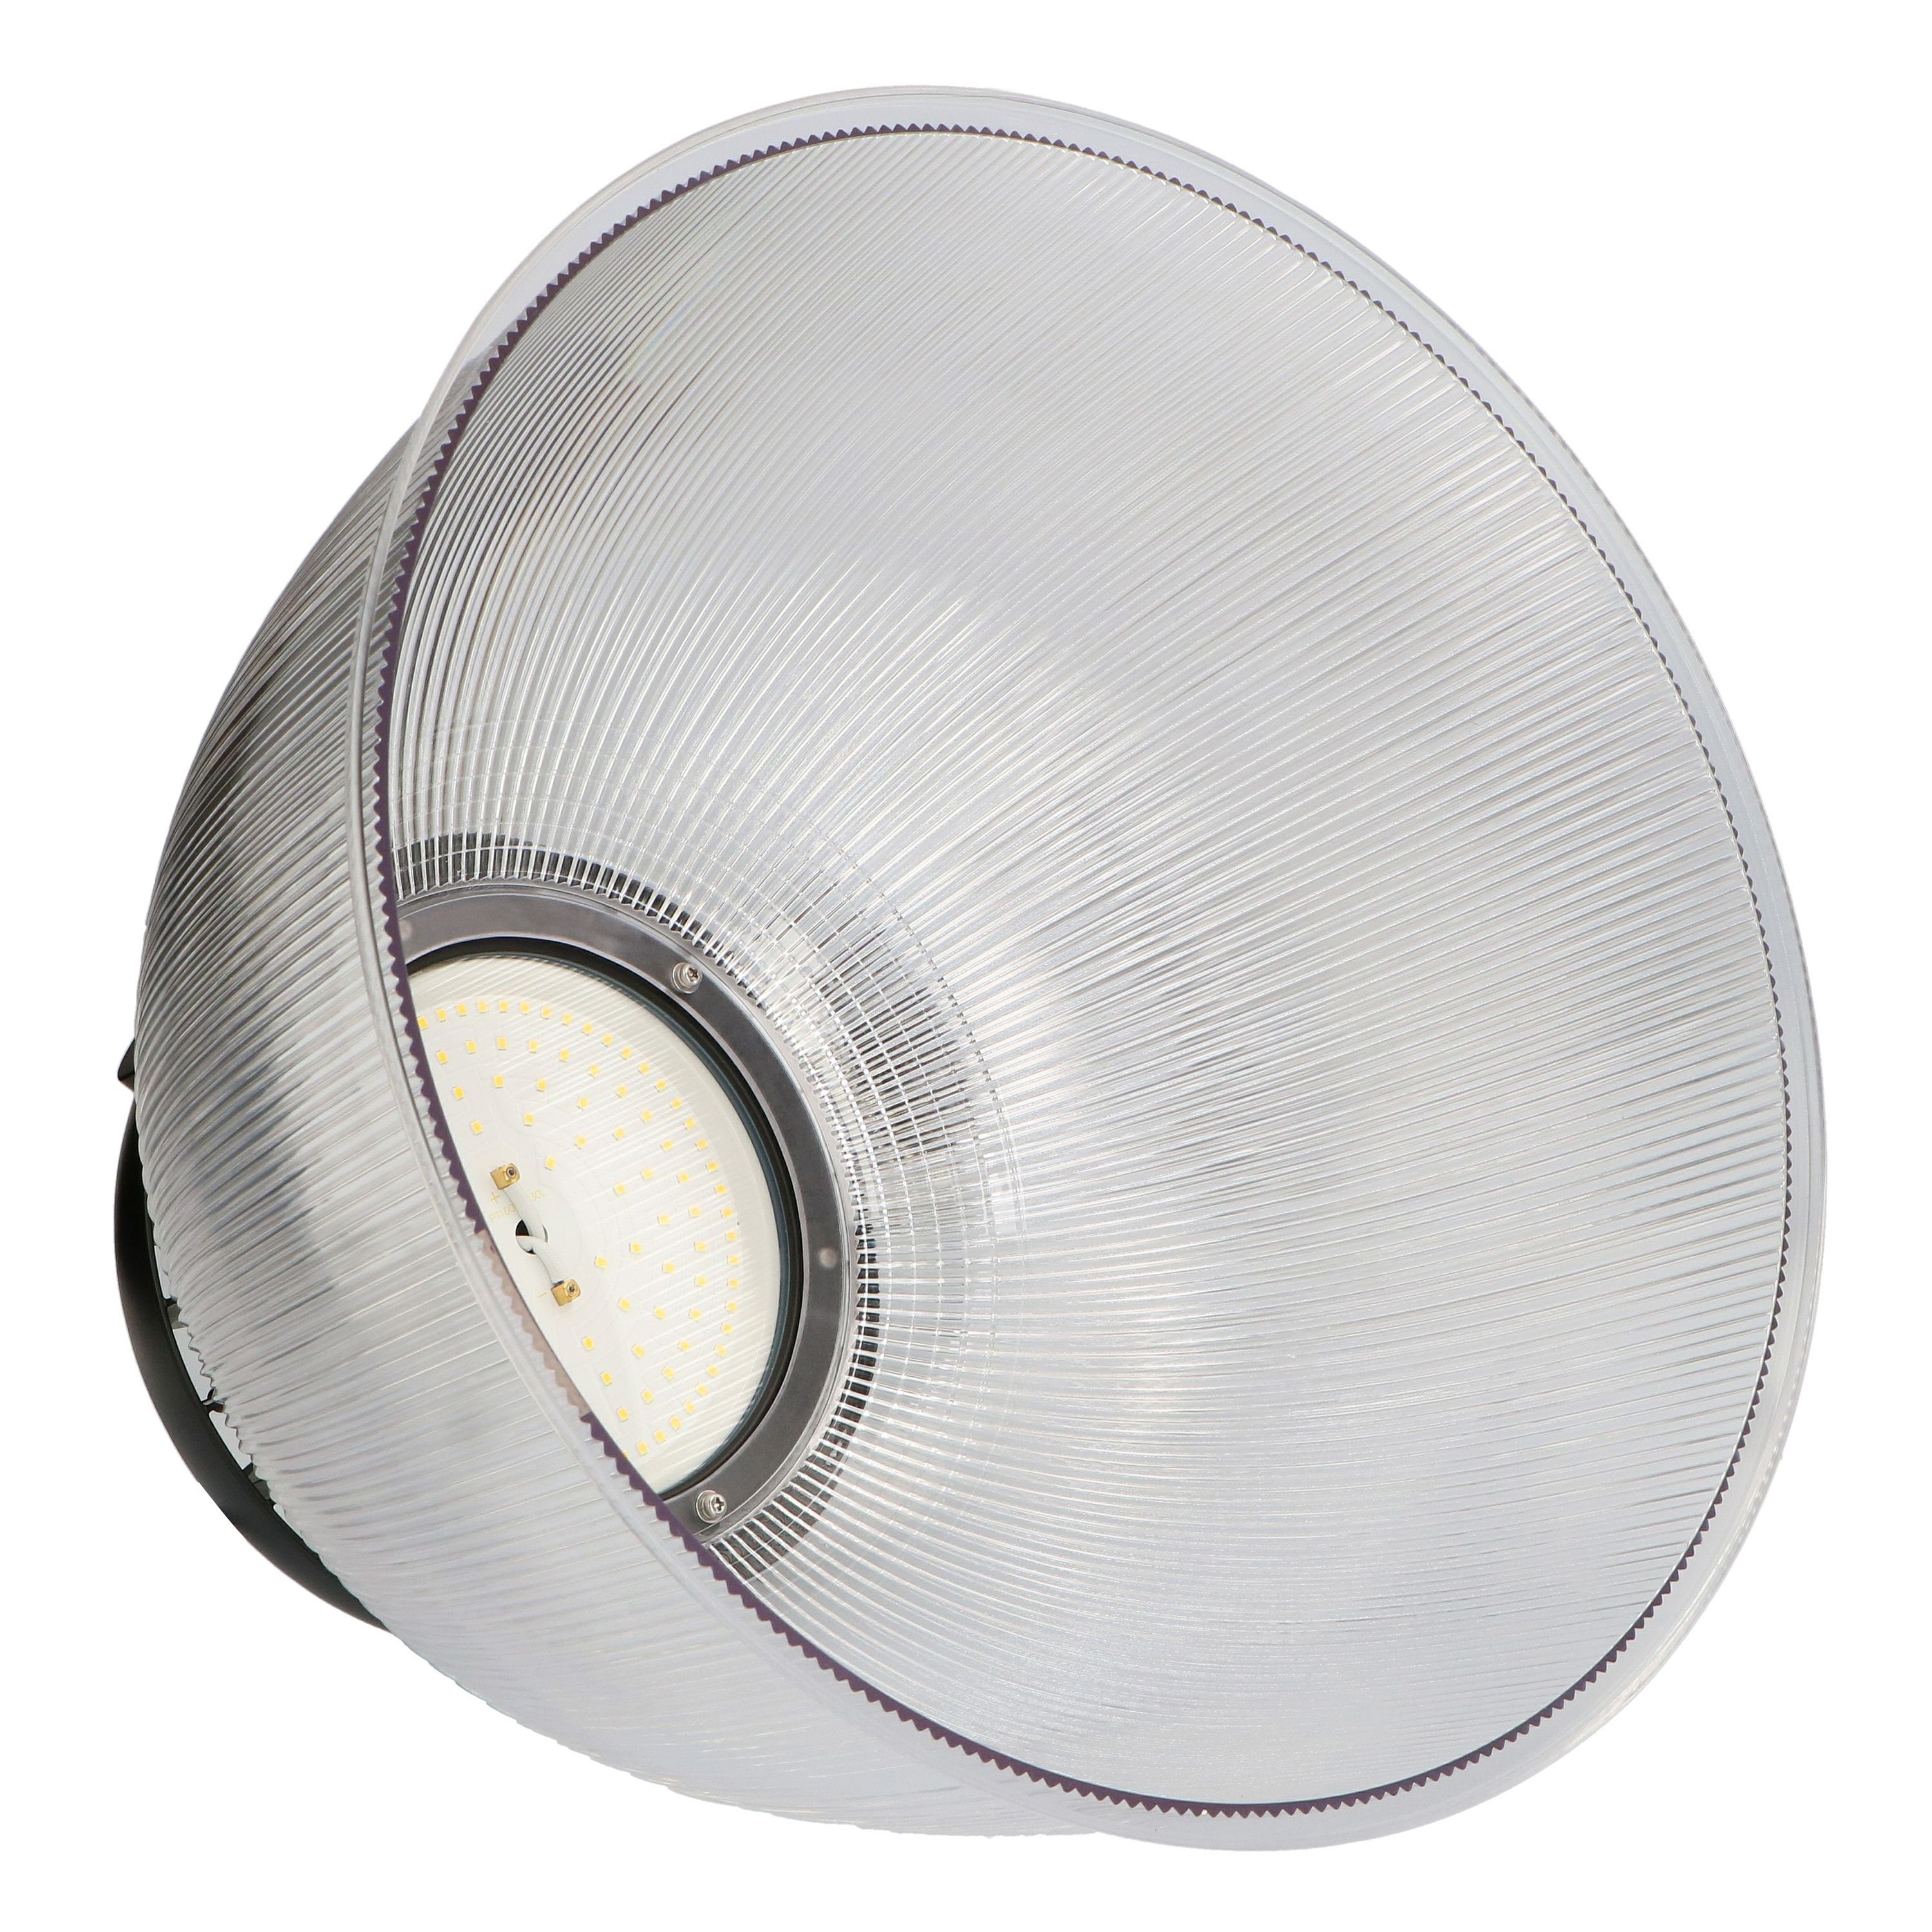 Pendelleuchte Reflektor für passend 70°, LED, 240034X-1 LED-Hallentiefstrahler light LED's LED